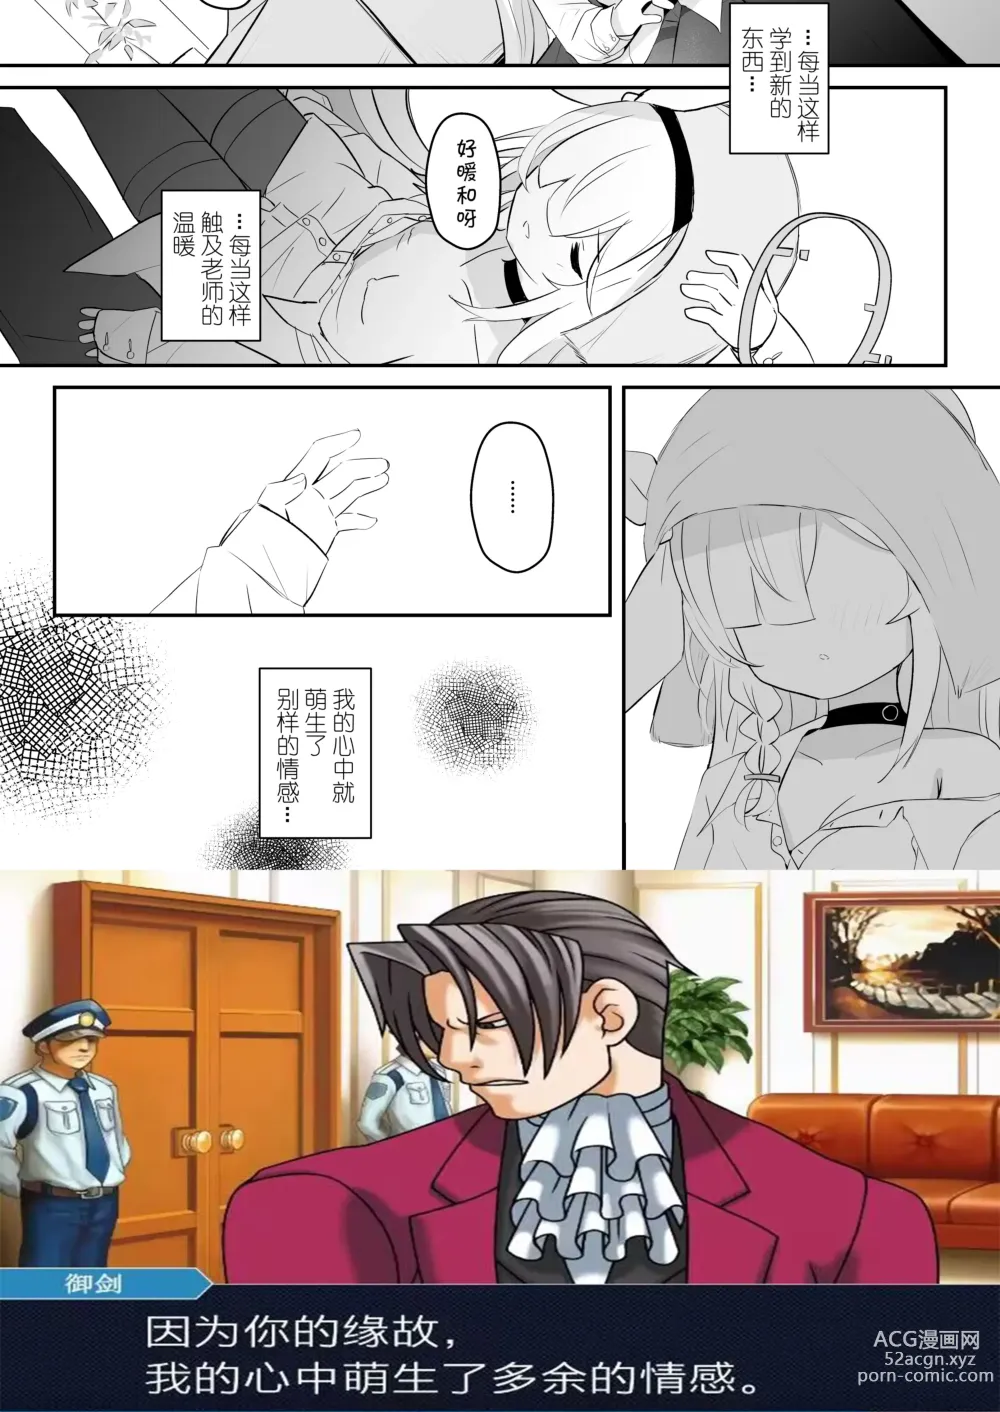 Page 45 of doujinshi 得知了这份温暖之后。